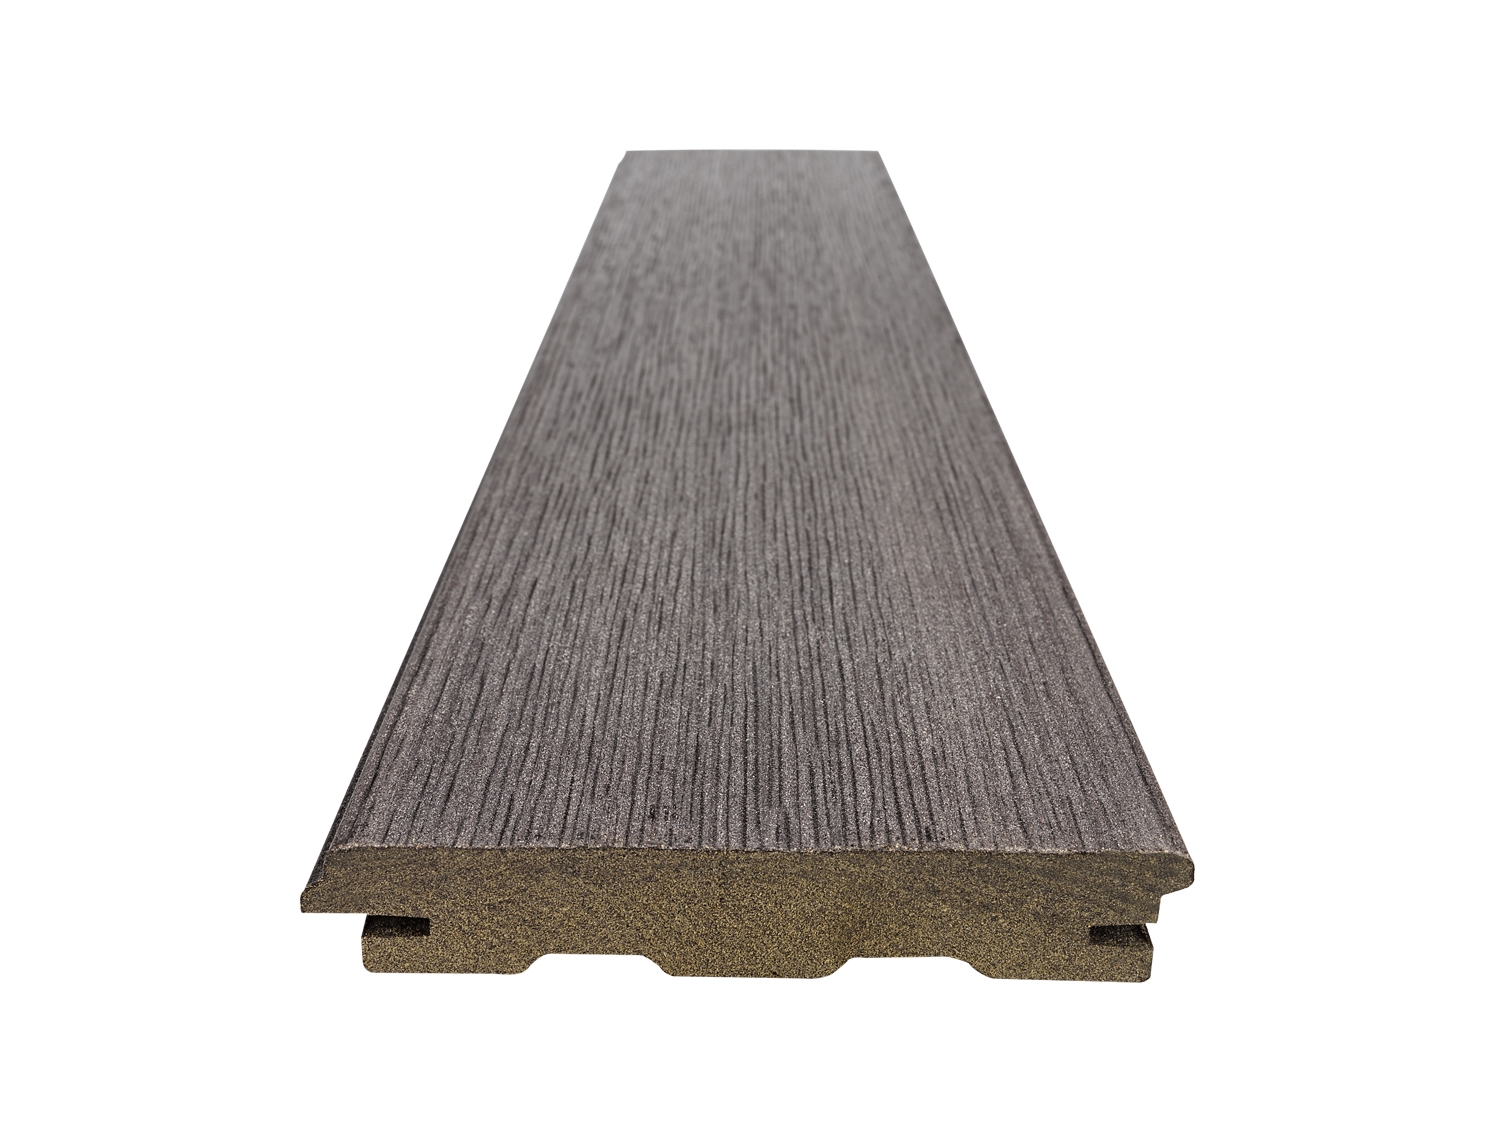 Prkno terasové Woodplastic RUSTIC TOP wenge 22×140×4000 mm